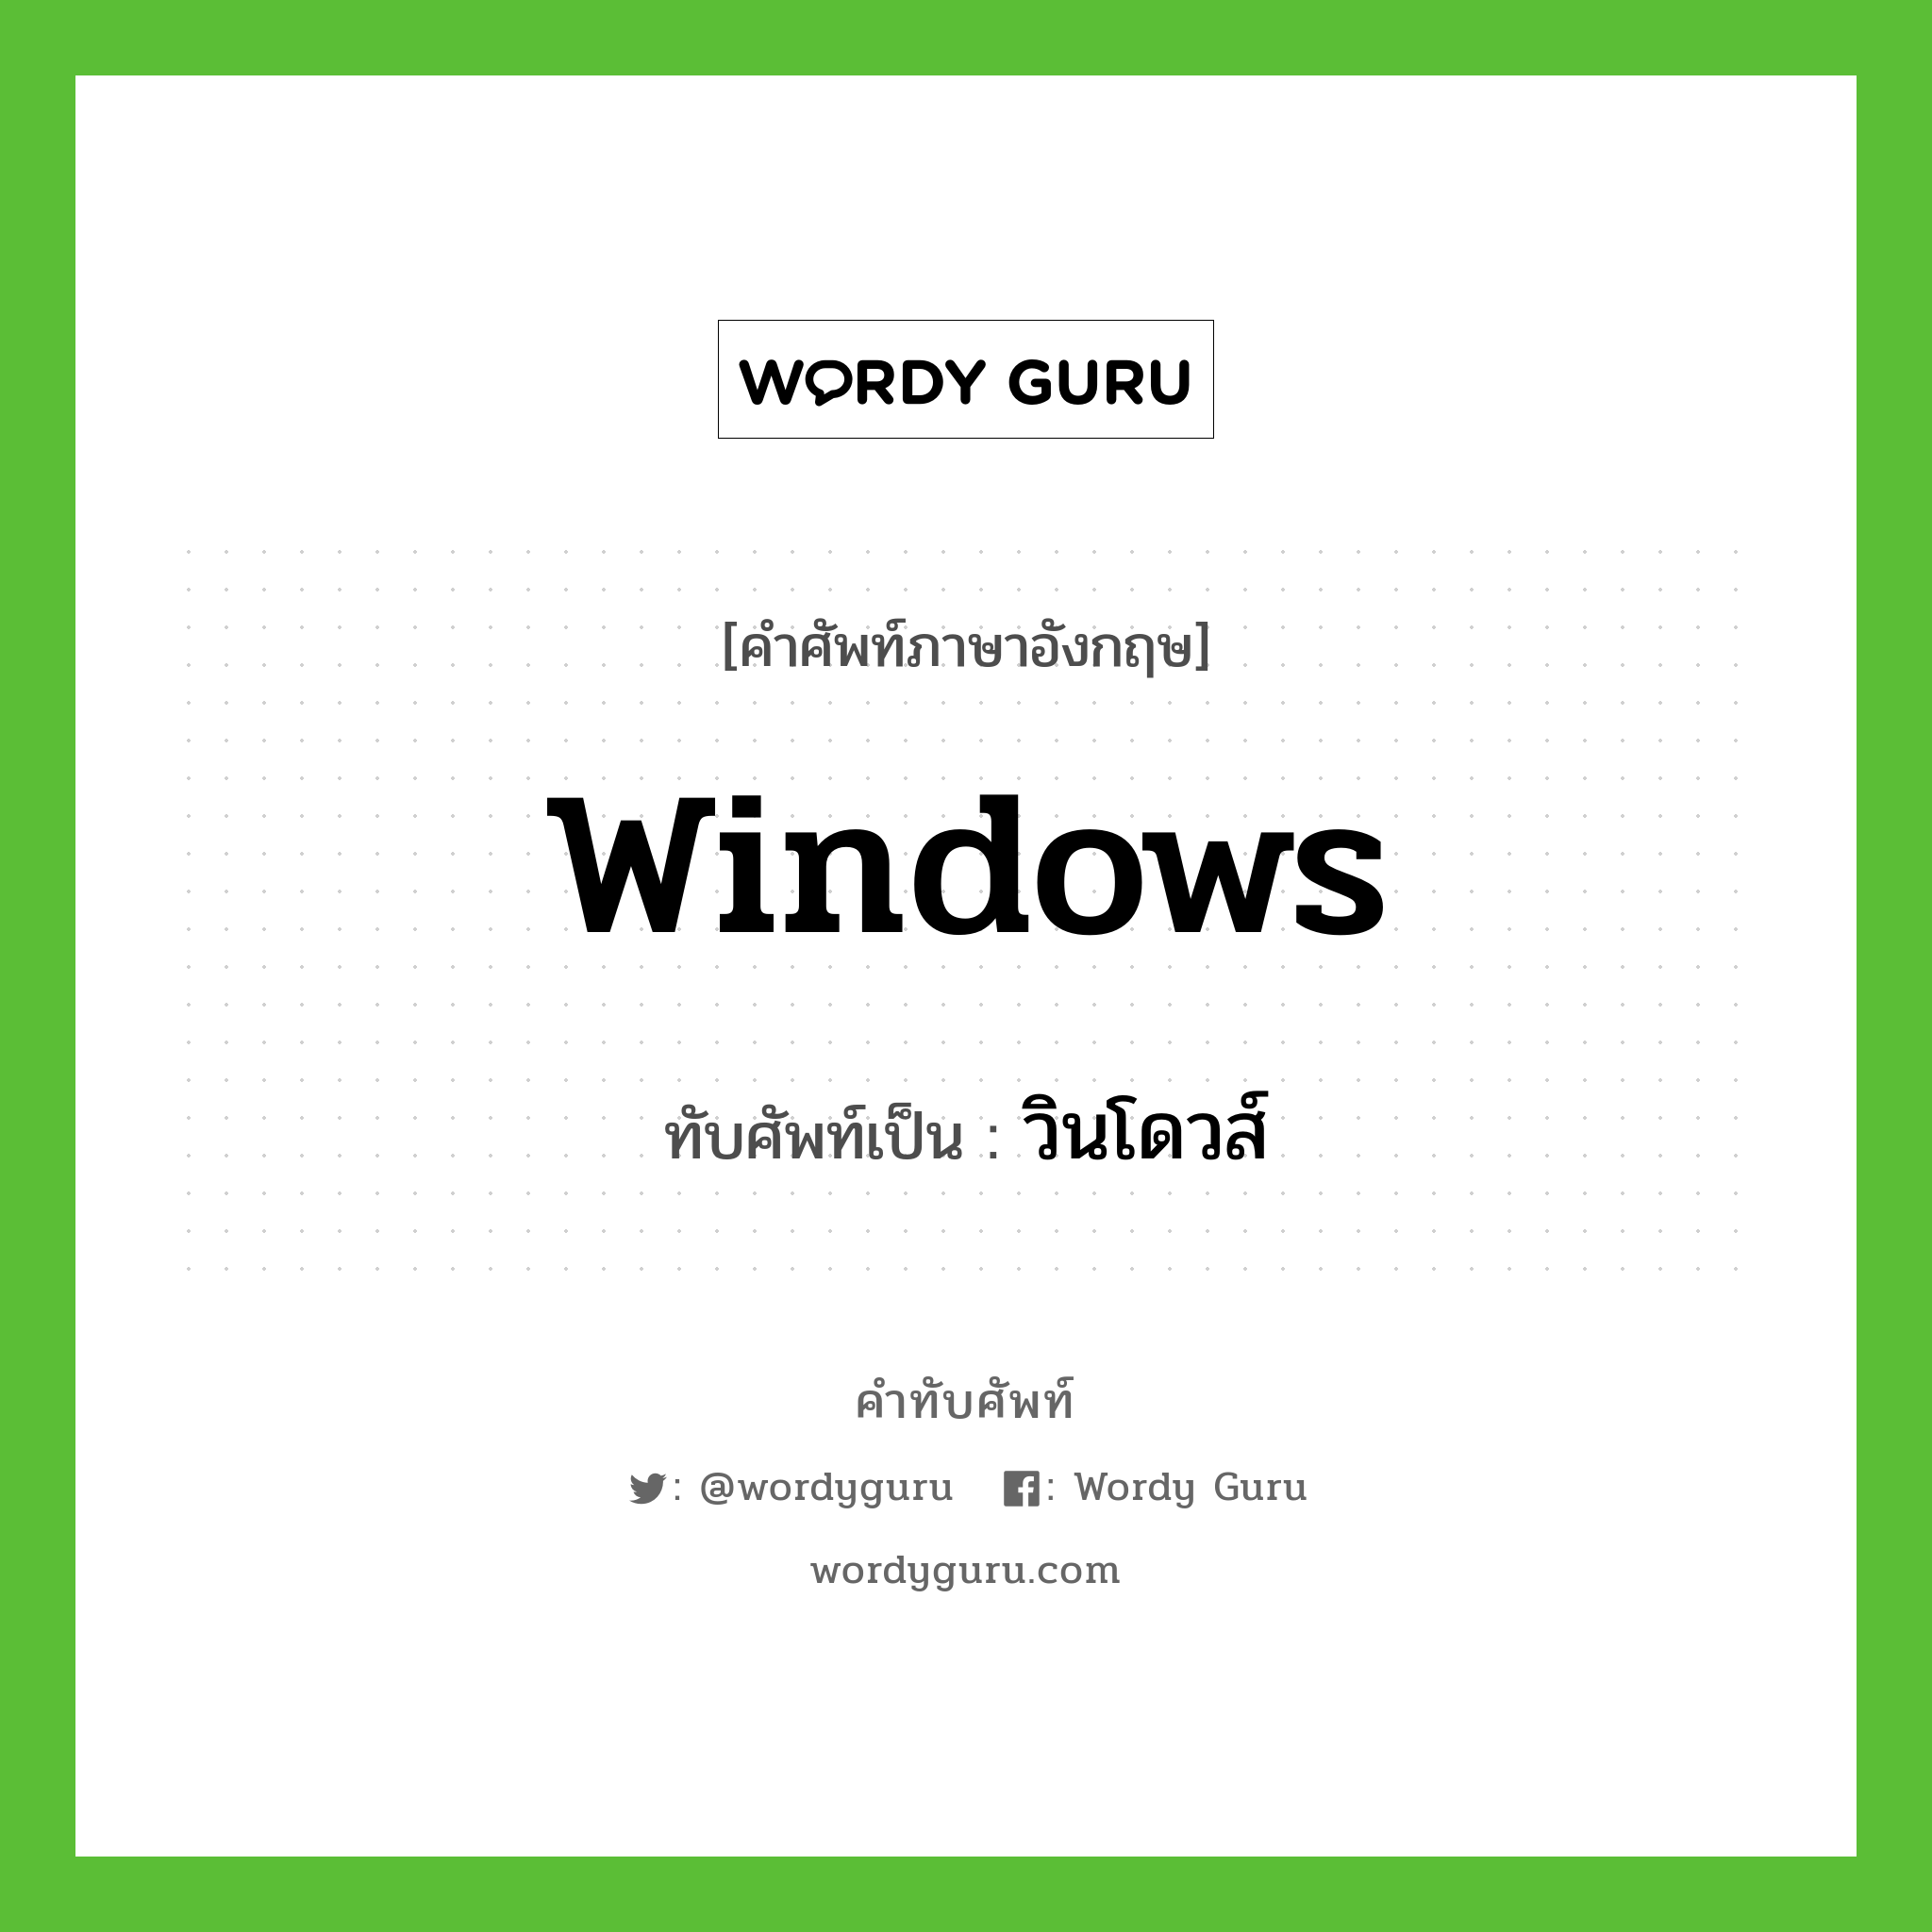 Windows เขียนเป็นคำไทยว่าอะไร?, คำศัพท์ภาษาอังกฤษ Windows ทับศัพท์เป็น วินโดวส์